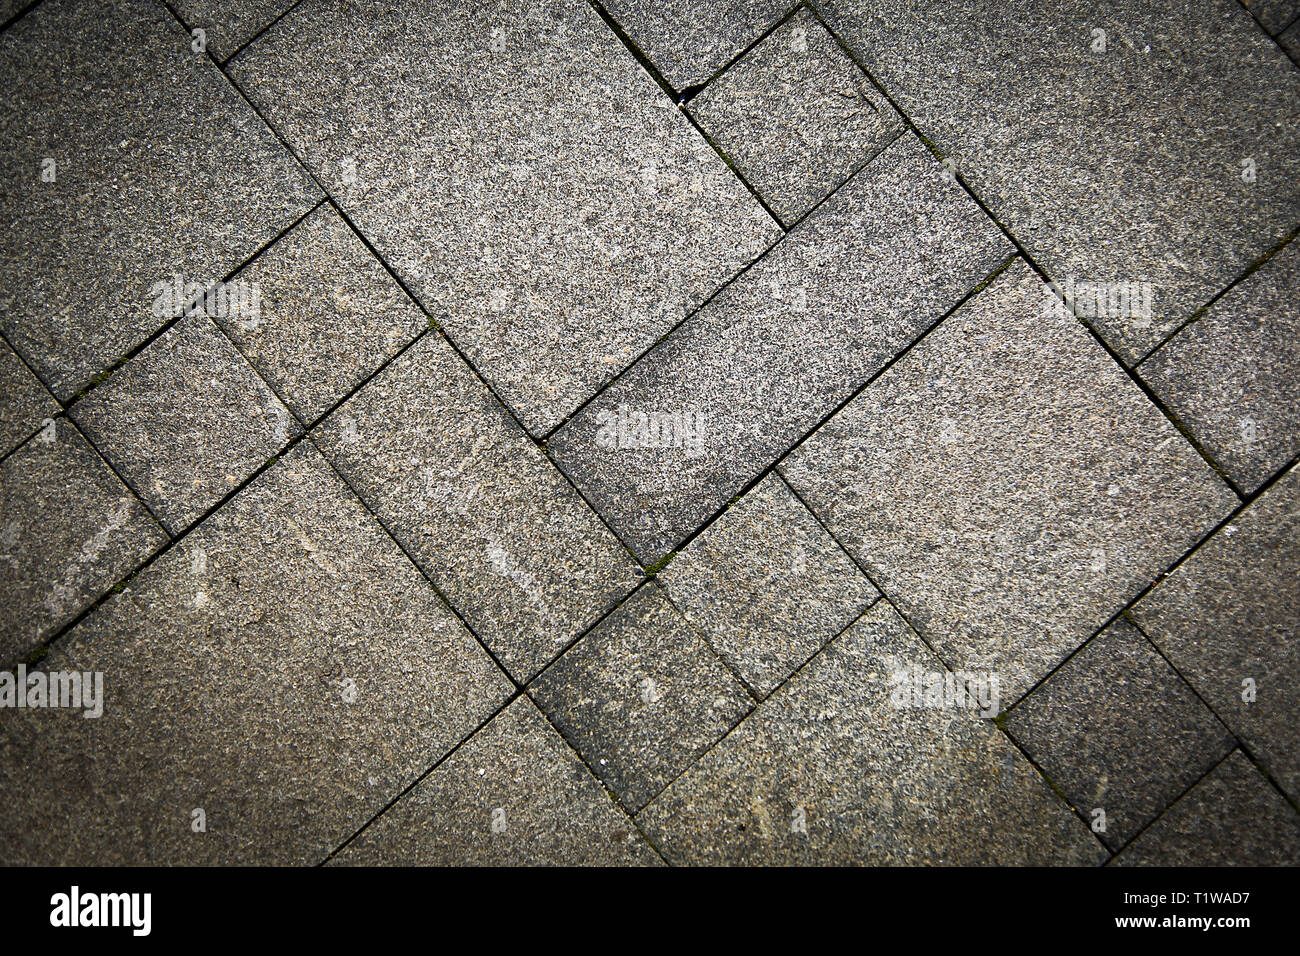 La vereda camino de piedra natural está revestido con mosaicos de color gris claro .Texture.Antecedentes. Foto de stock